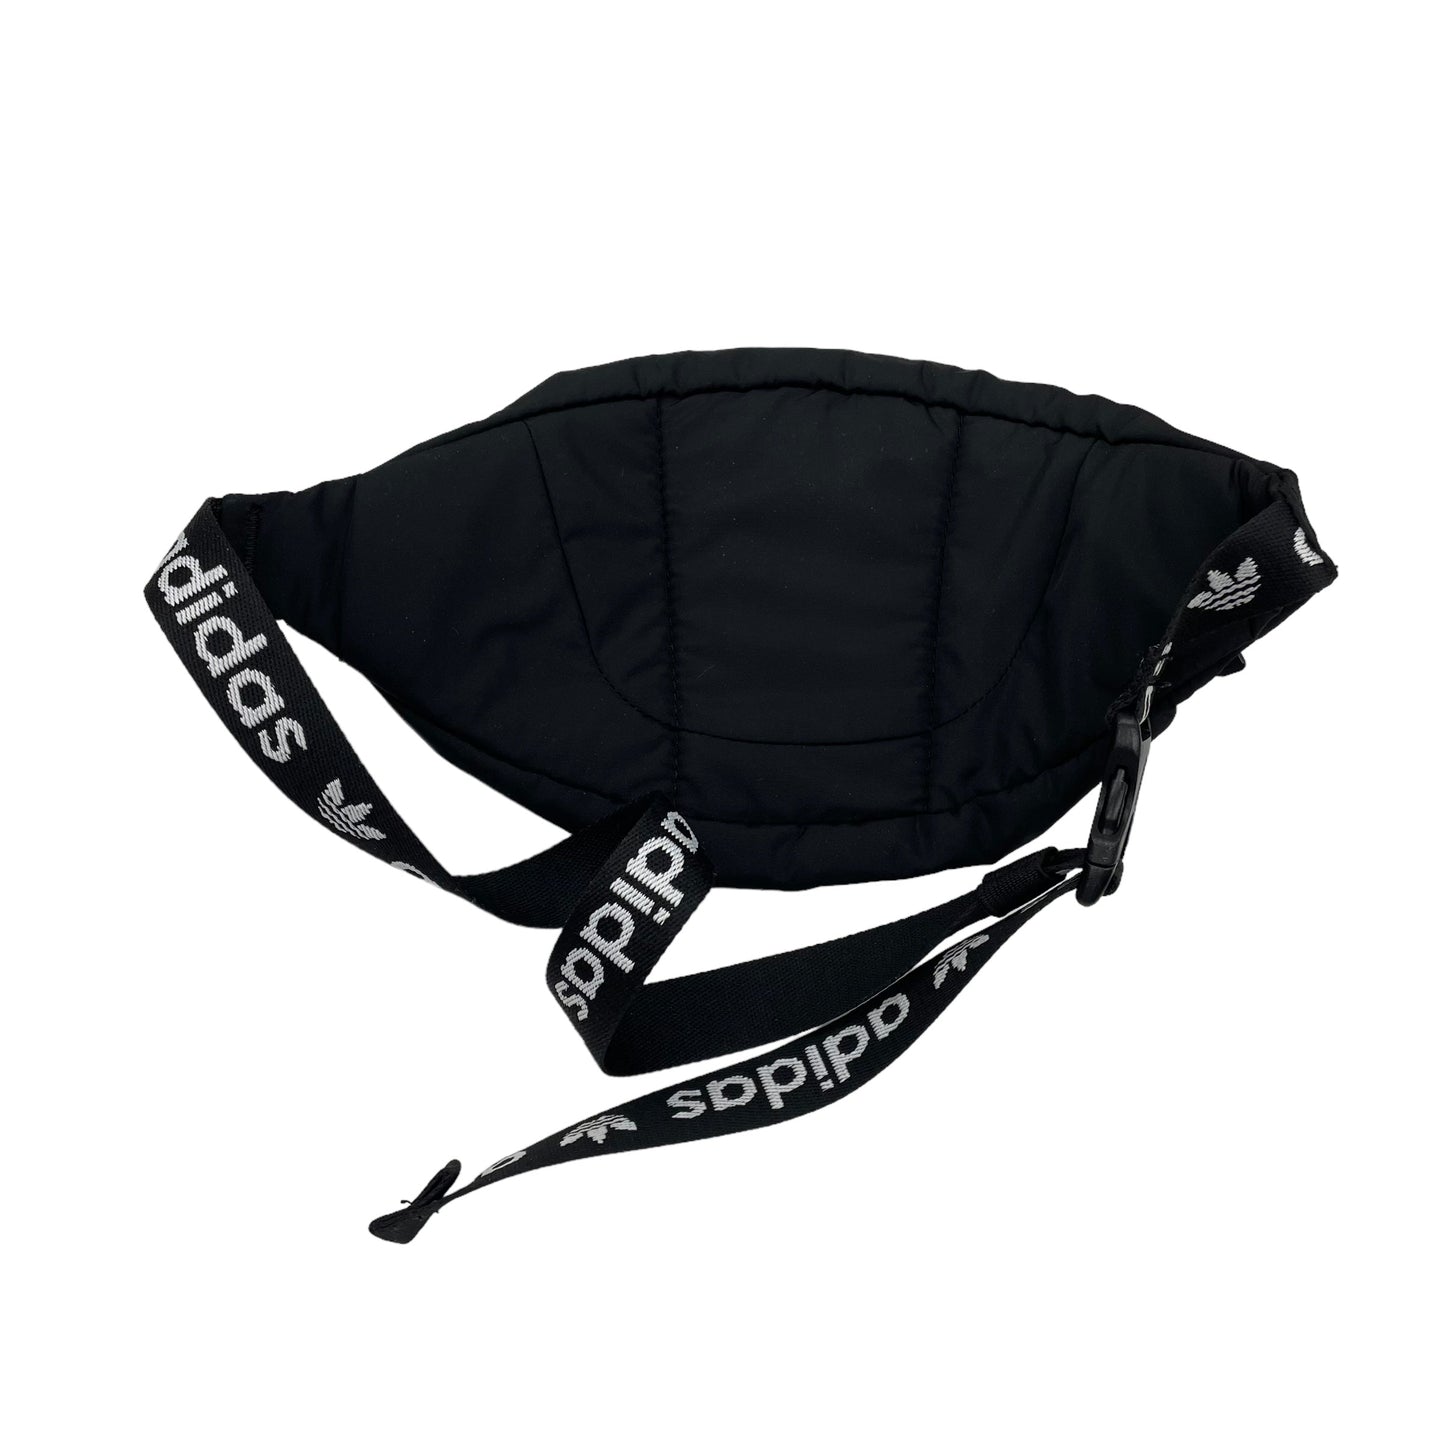 Belt Bag By Adidas  Size: Medium